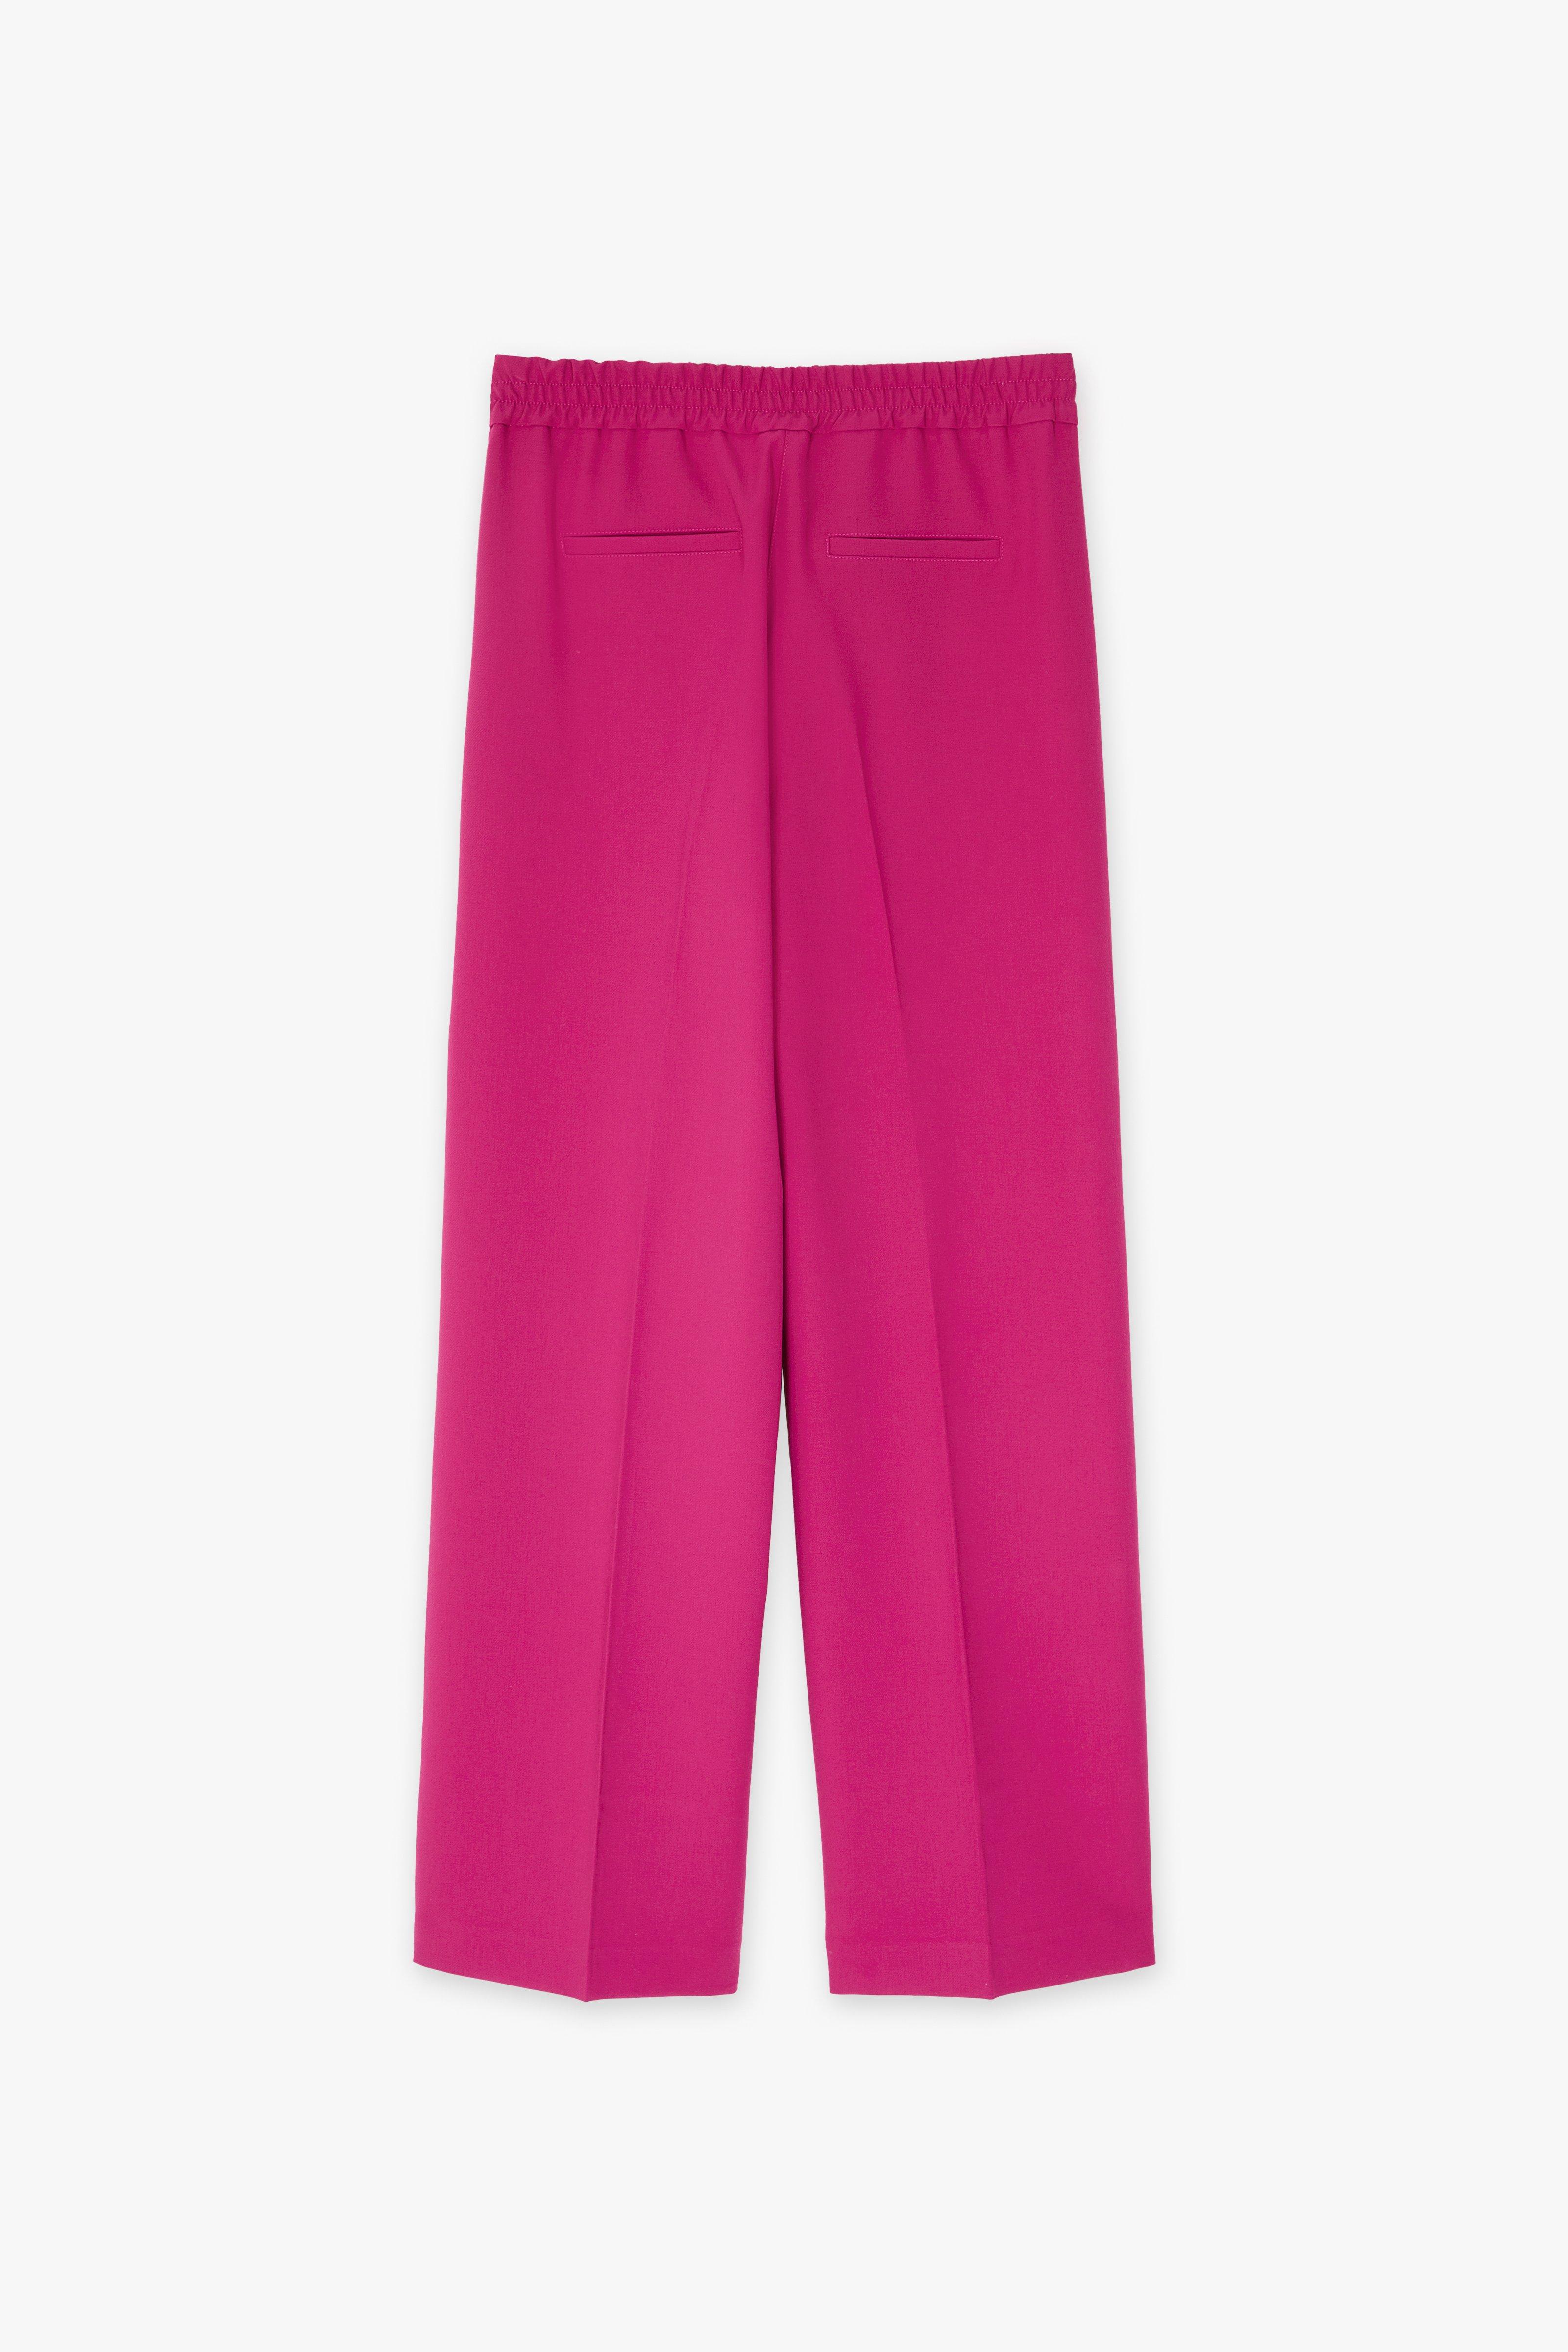 CKS Dames - THIBIS - pantalon long - rose foncé